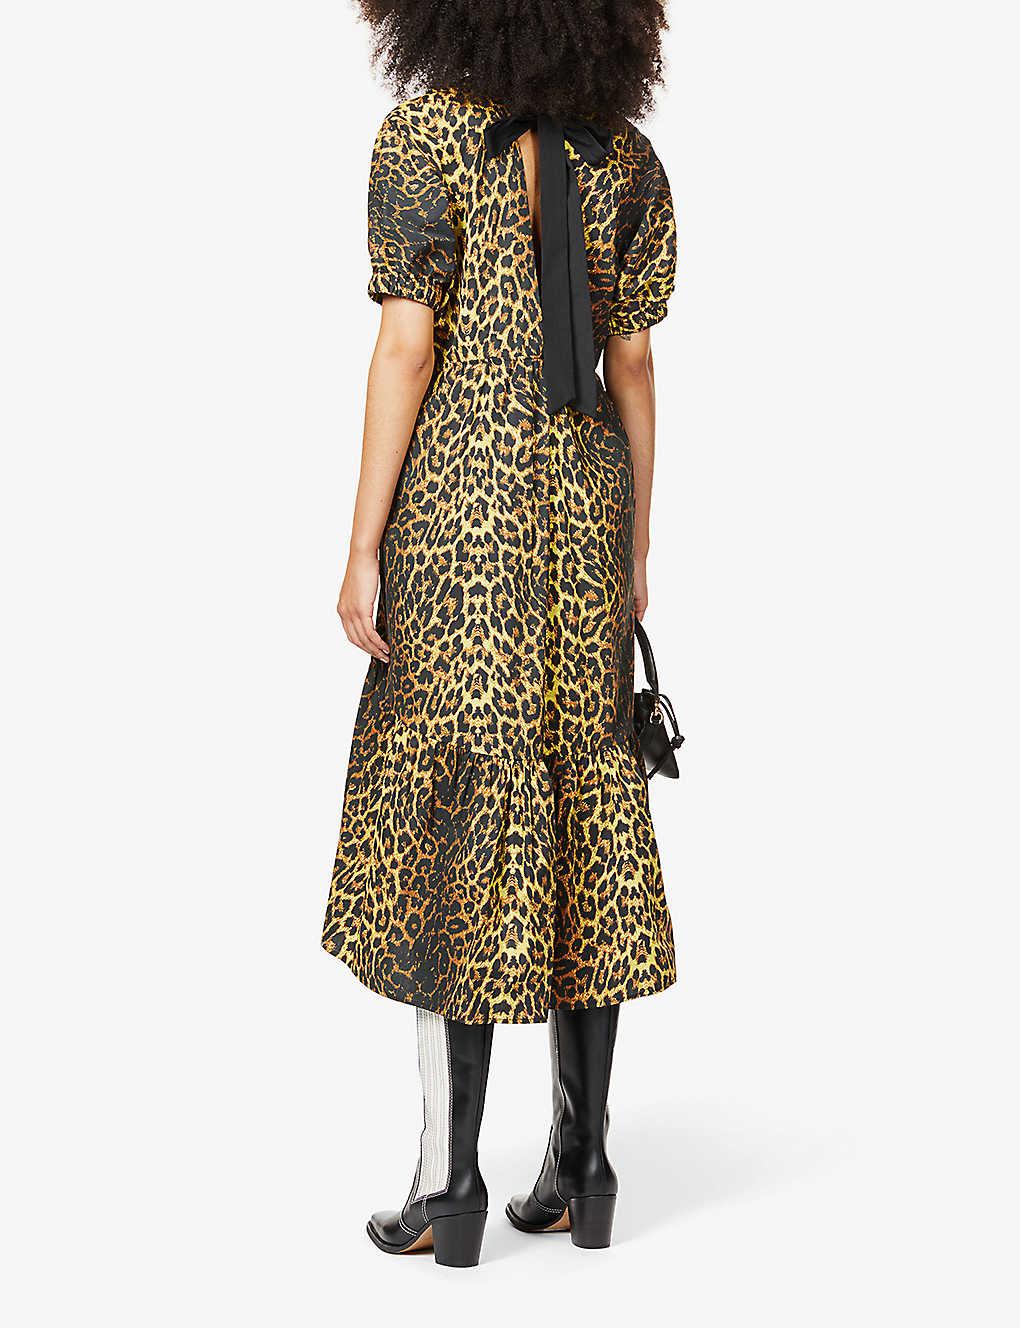 TOPSHOP Leopard Print Pop Bow Midi Dress | Lyst